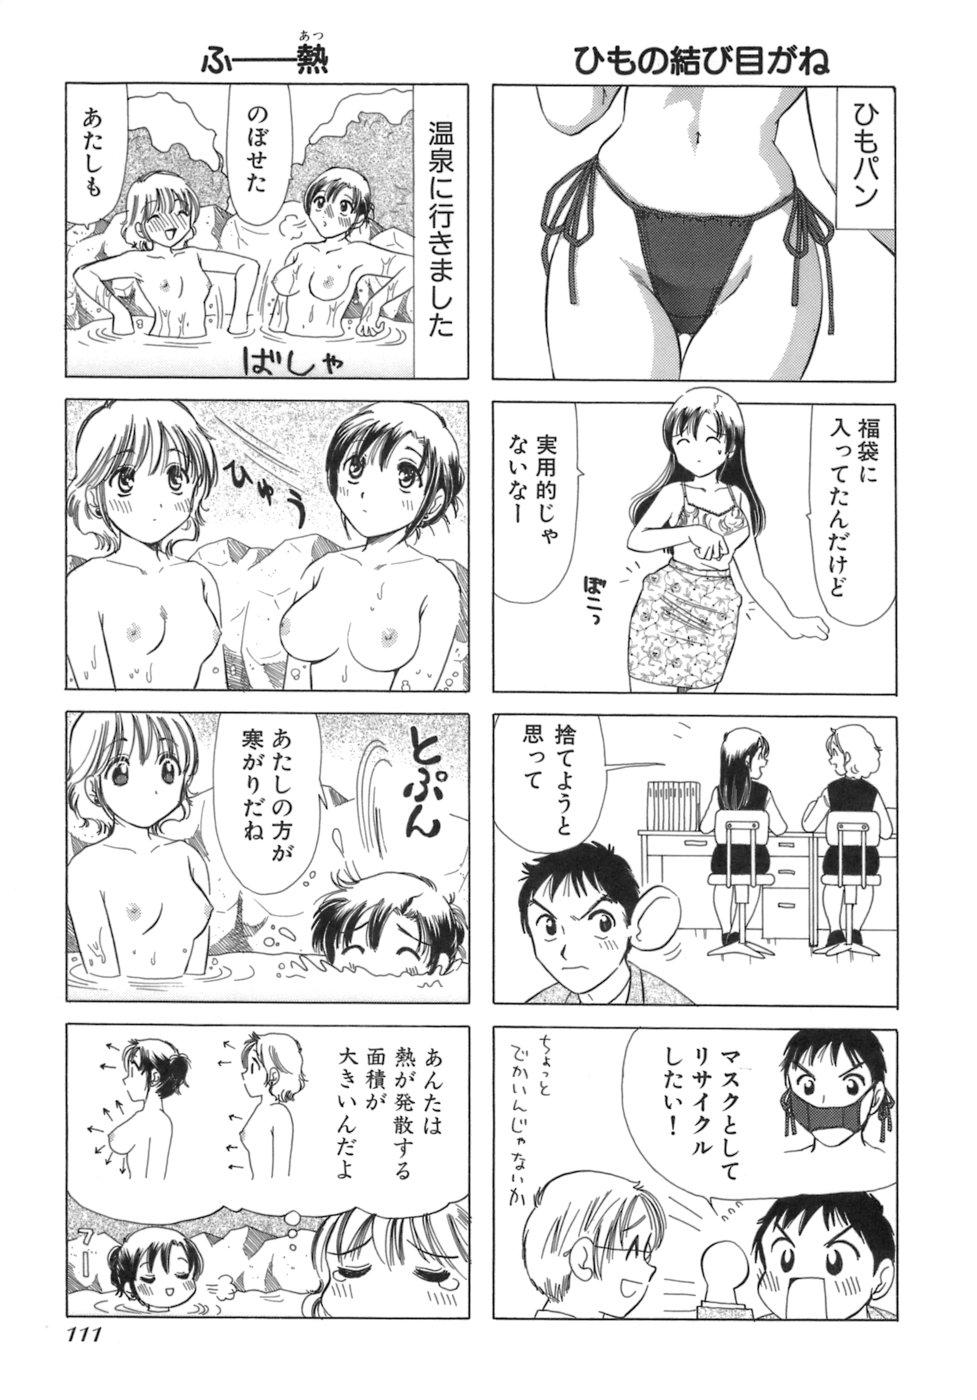 Eriko-kun, Ocha!! Vol.03 113